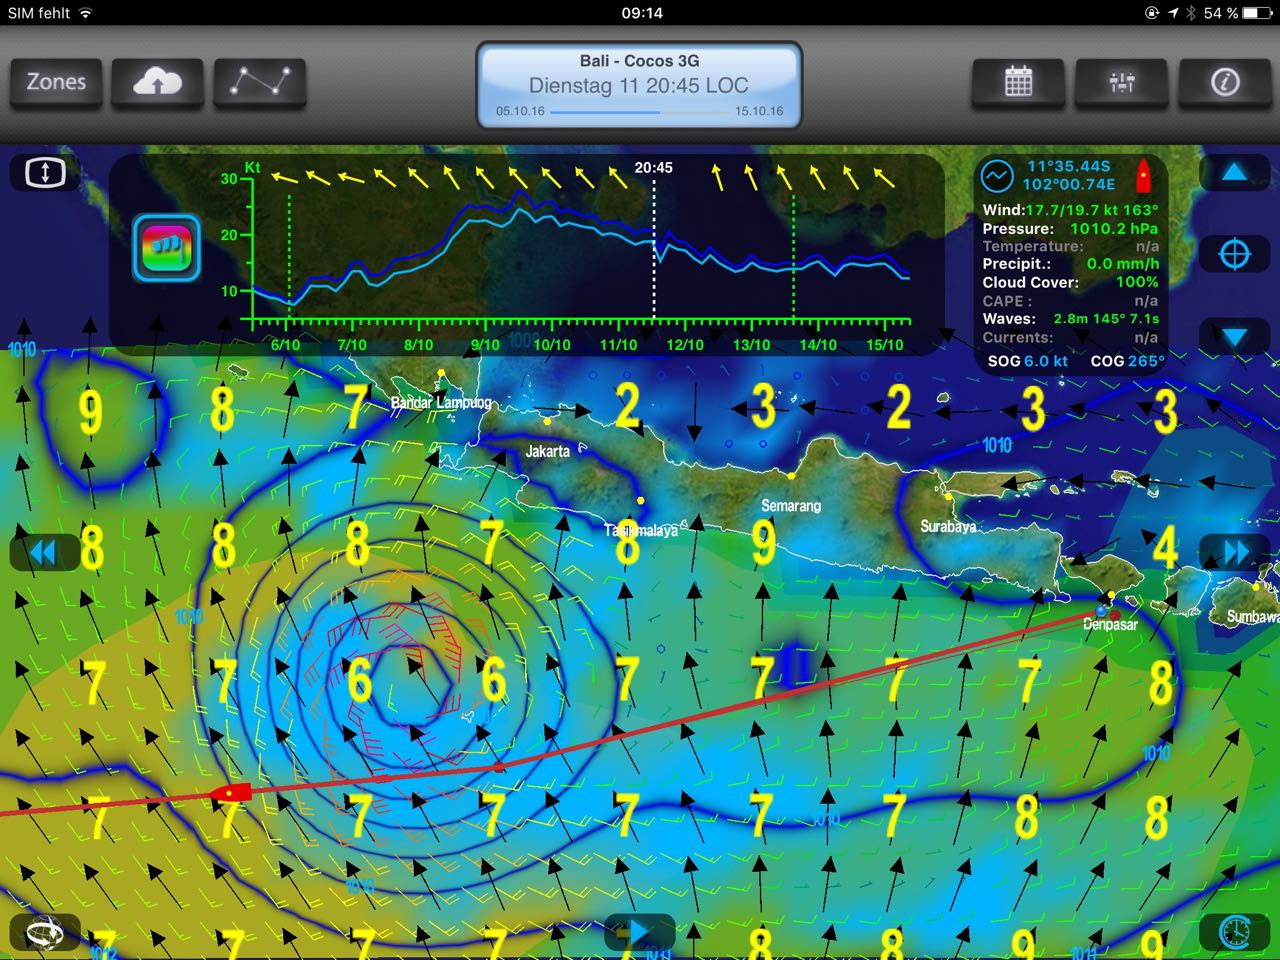 Später zeigt eine Simulation, dass die hapa na sasa dem Sturm weg fahren wird.